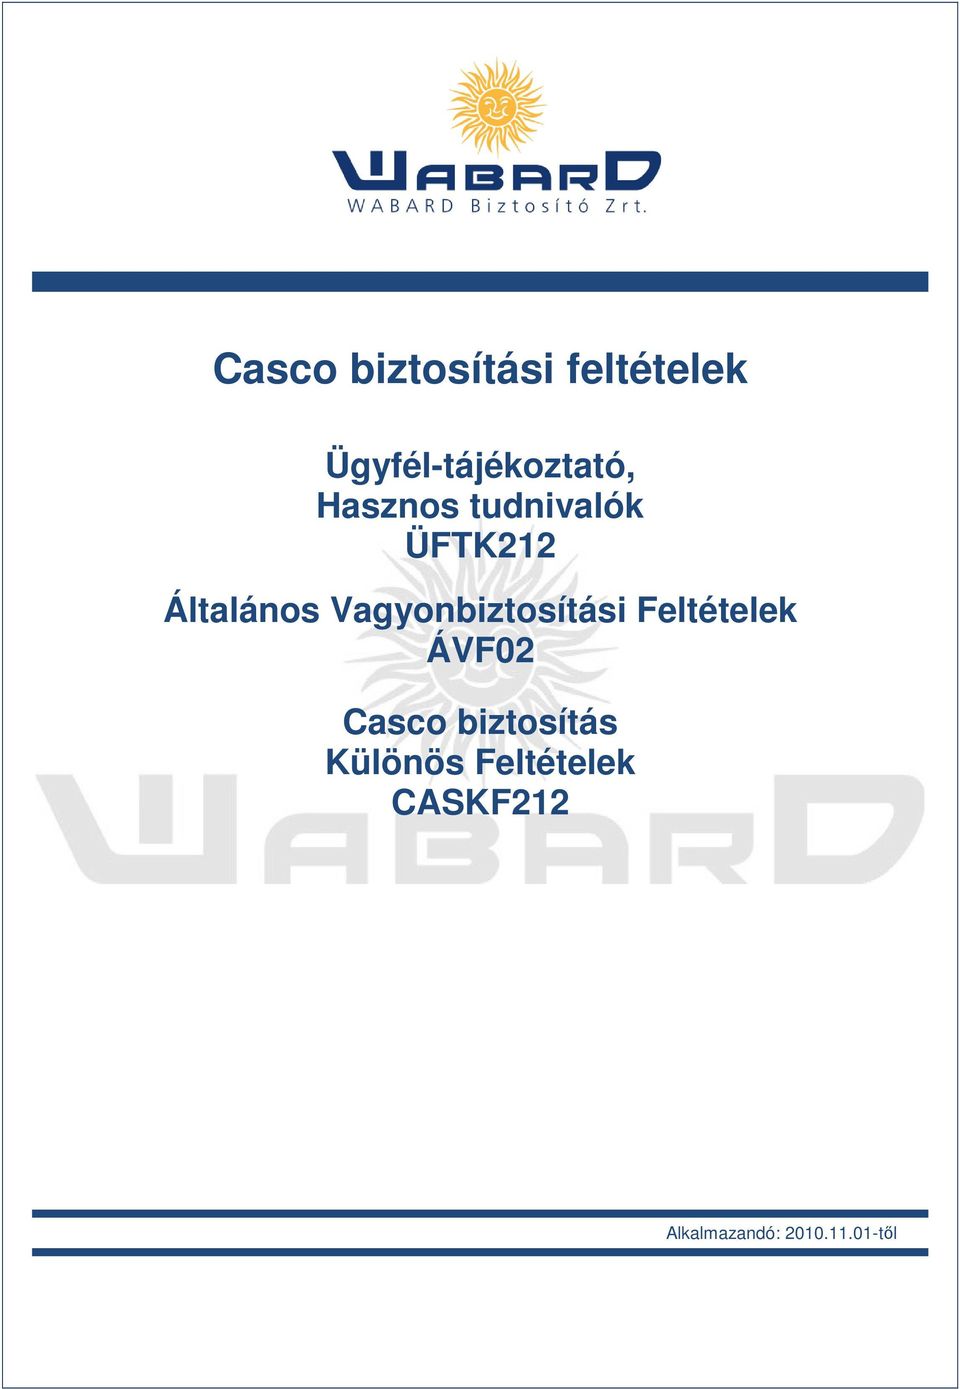 Vagyonbiztosítási Feltételek ÁVF02 Casco